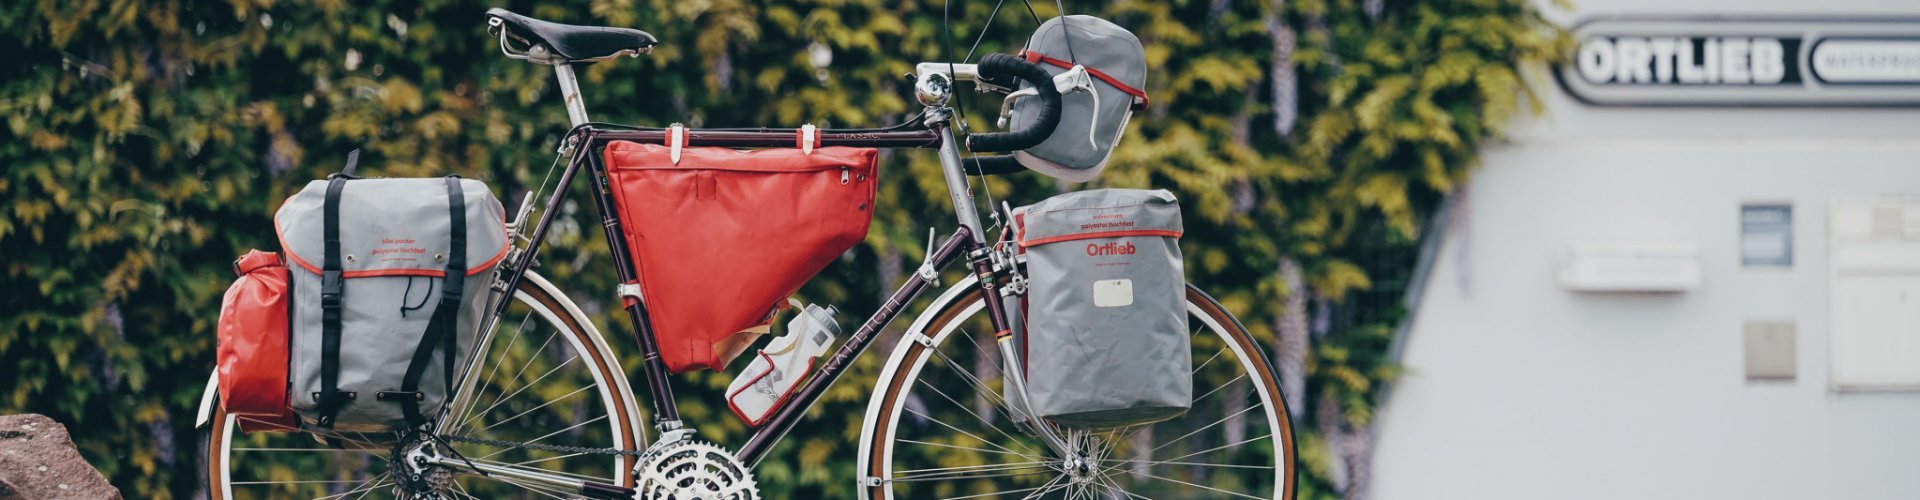 Abgebildet ist ein Stahl-Rennrad ausgestattet mit verschiedenen Bikepacking-Taschen der Firma Ortlieb.